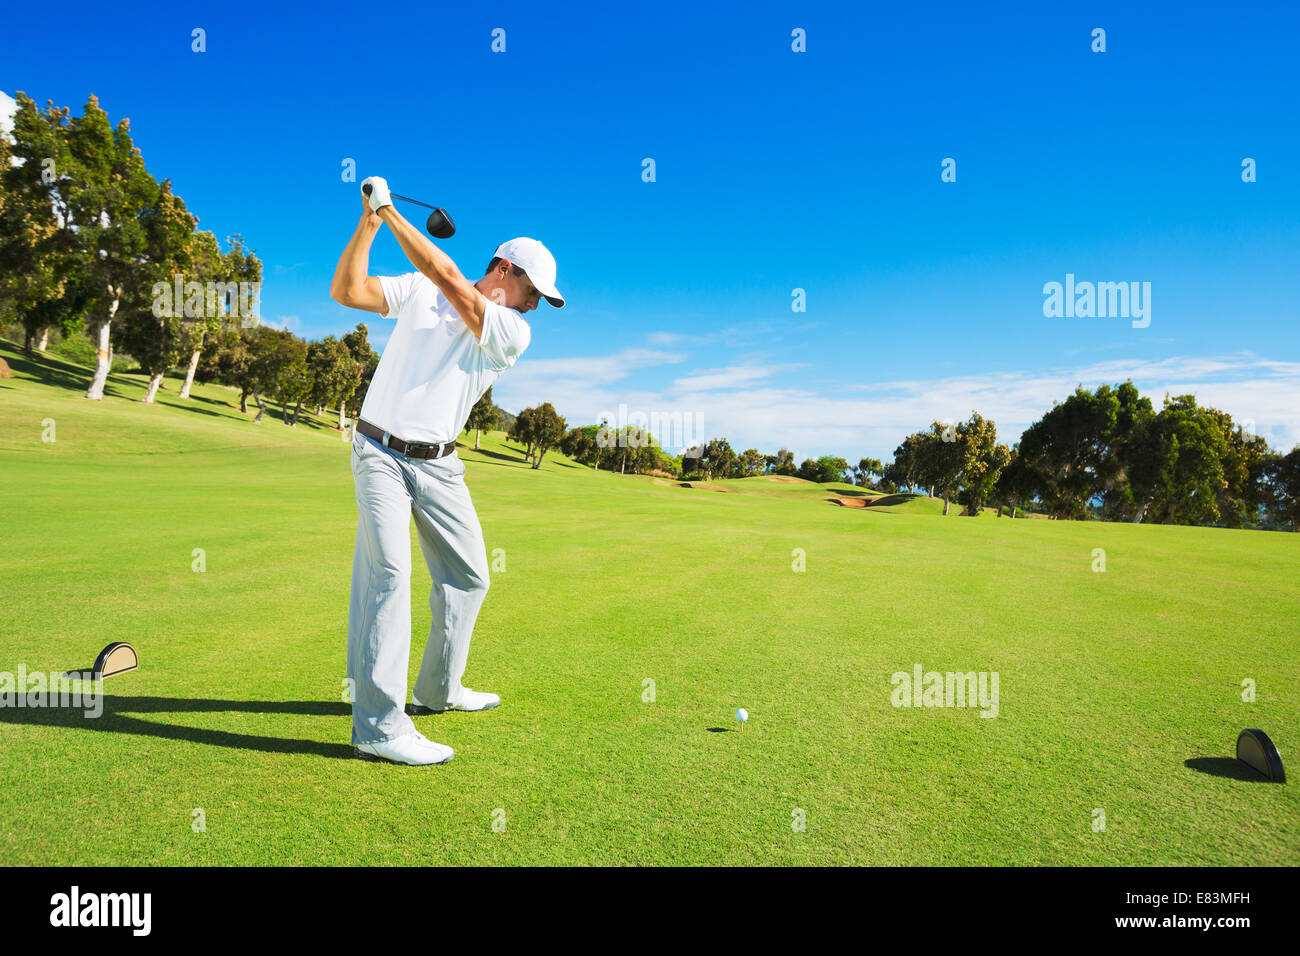 Golfspieler abschlagen. Mann schlägt Golfball vom Abschlag mit Fahrer. Stockfoto